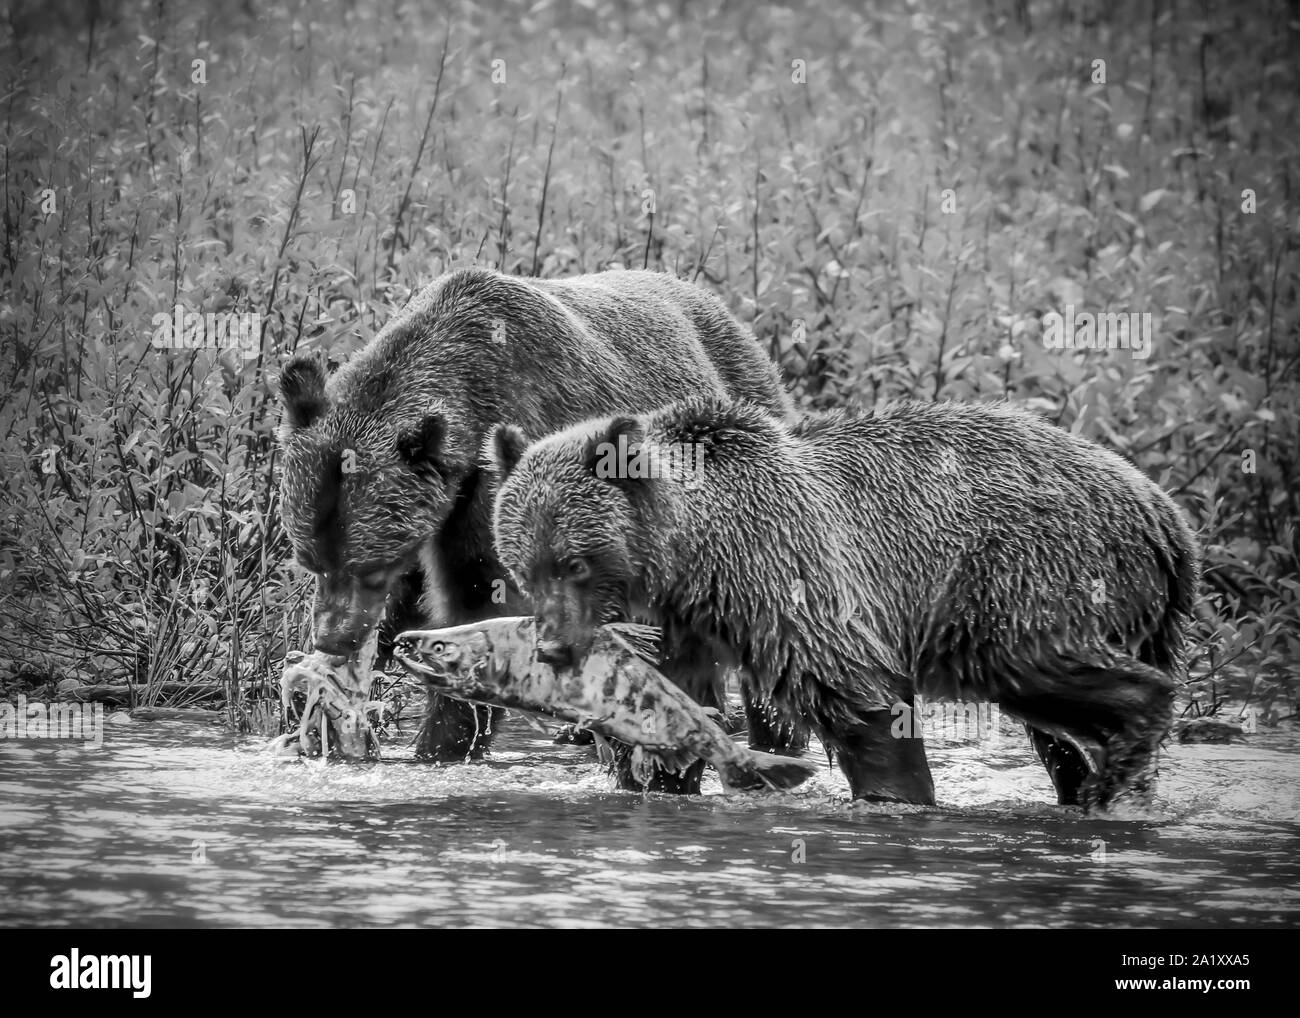 Zwei Grizzly Bären Essen Lachs, die sie in den Fluß verfangen haben. Das Bild ist in Schwarz und Weiß Stockfoto